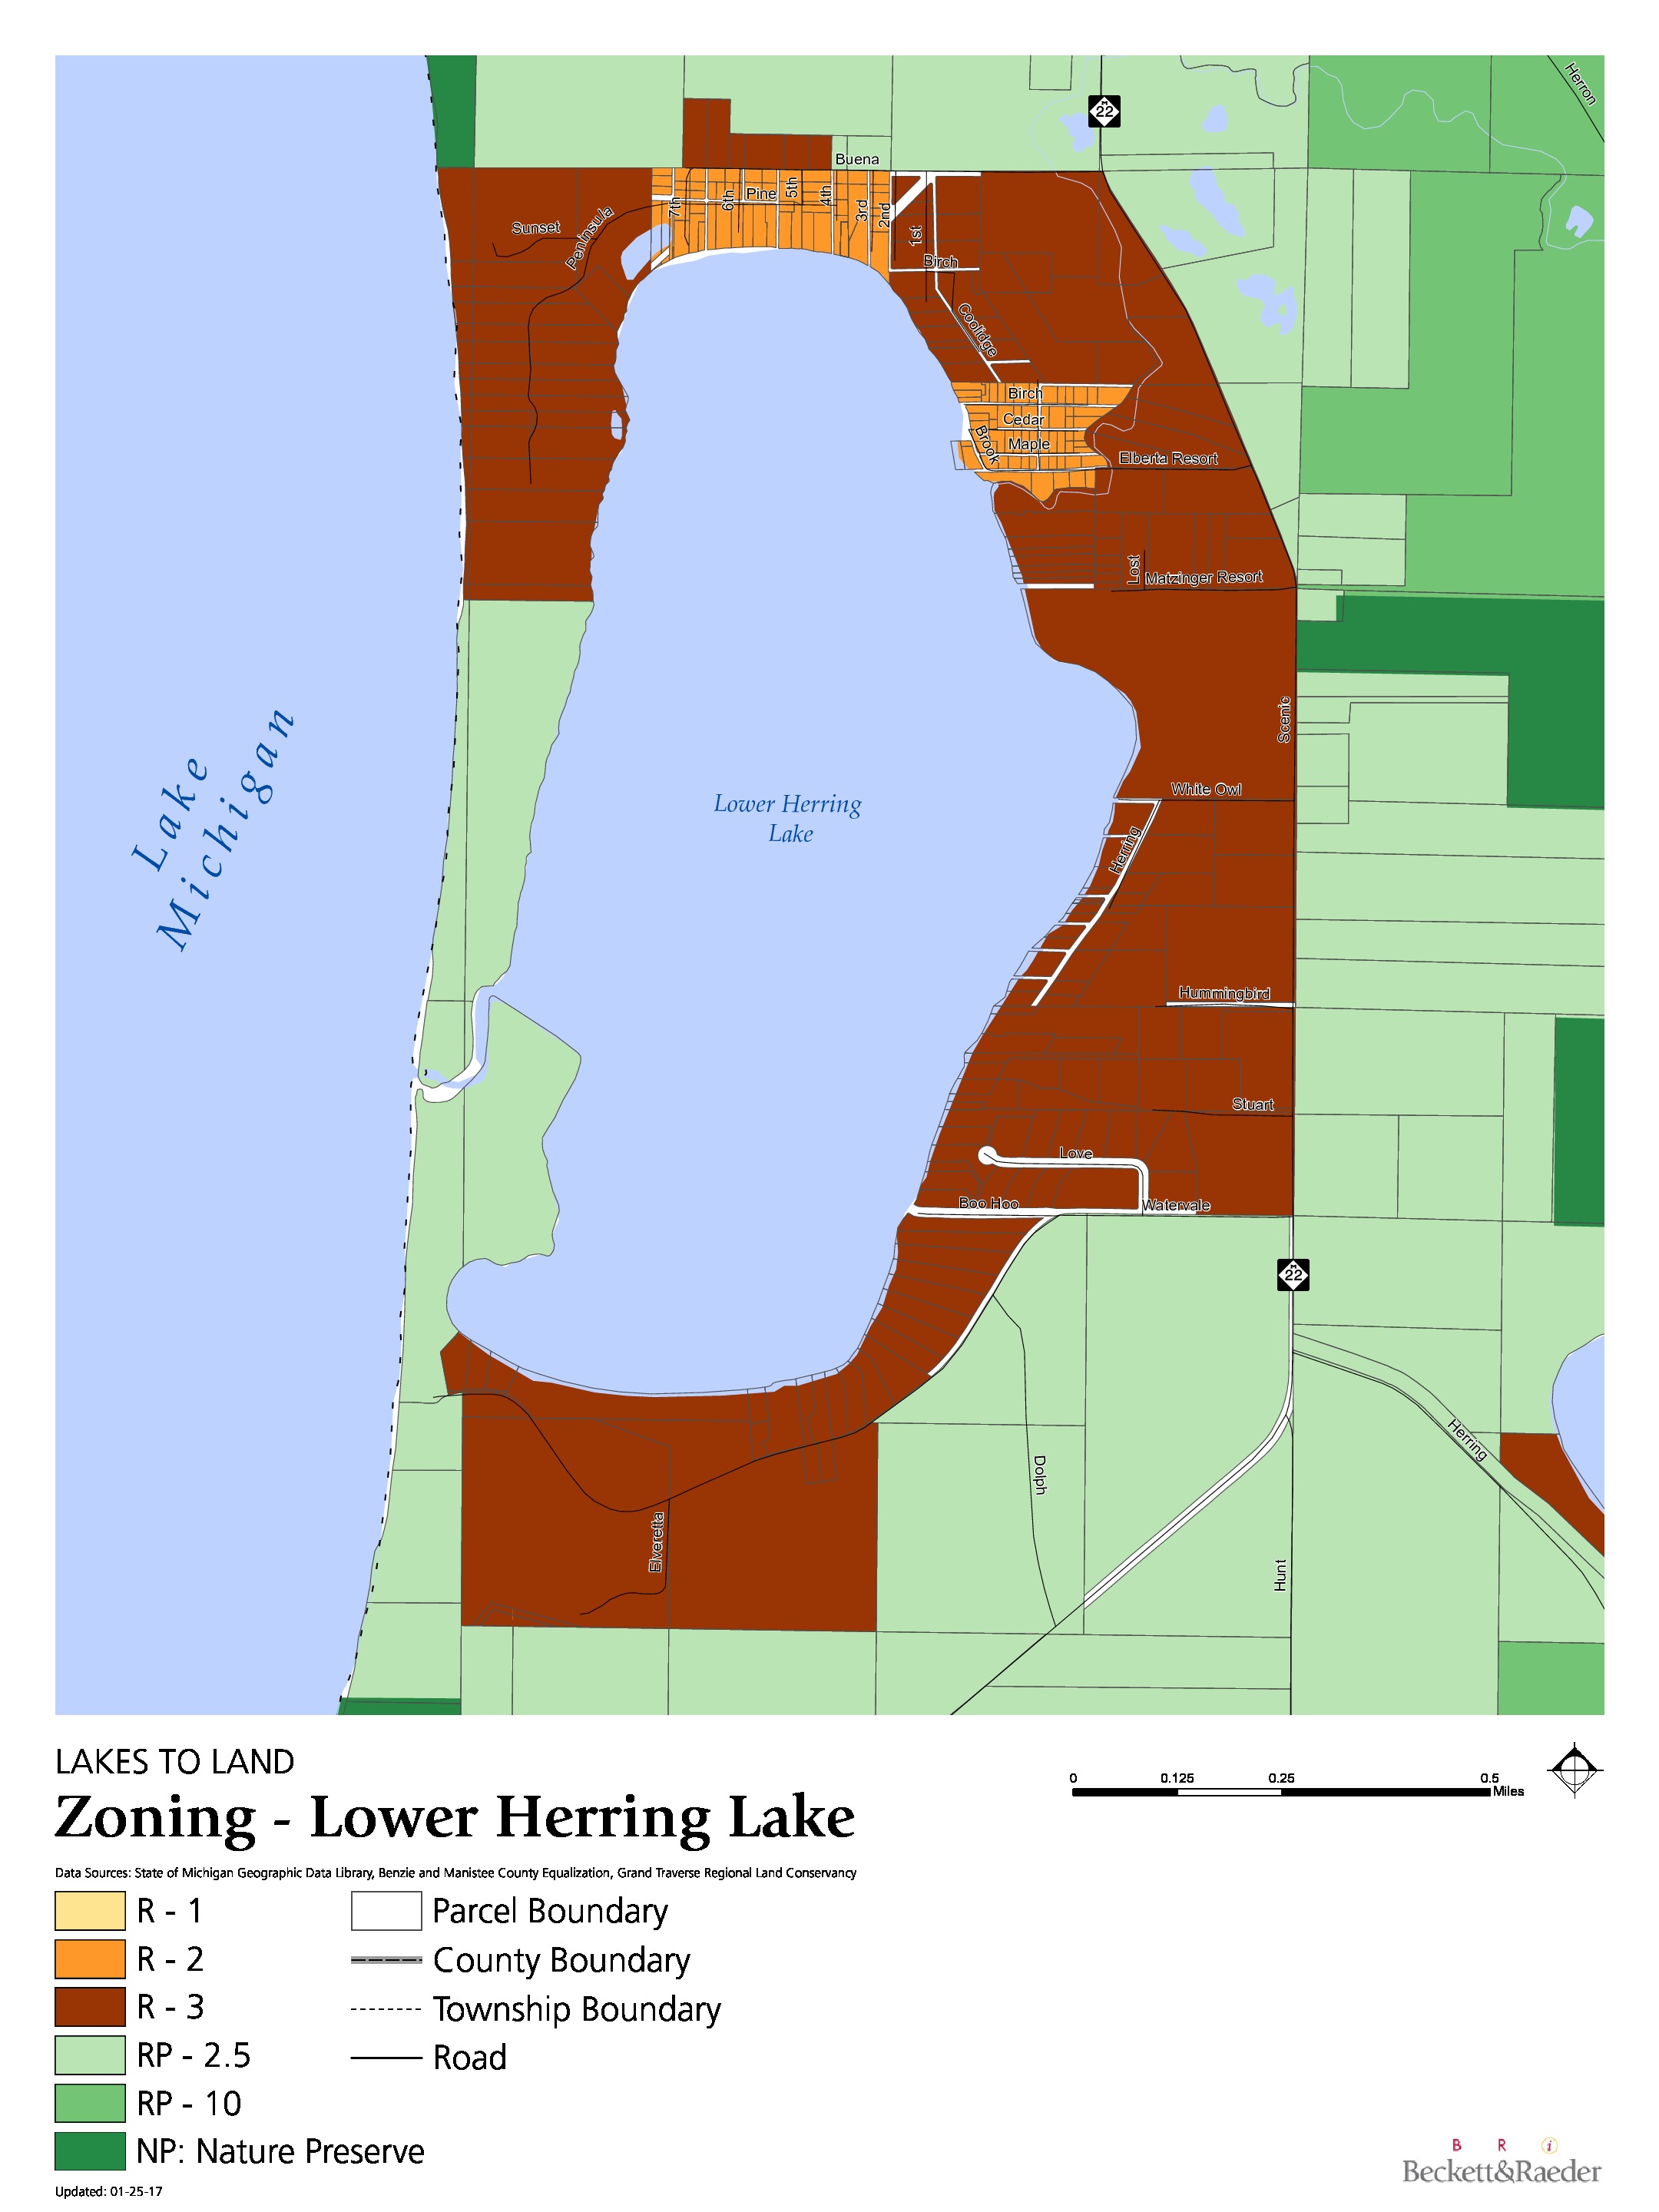 Zoning - Lower Herring Lake